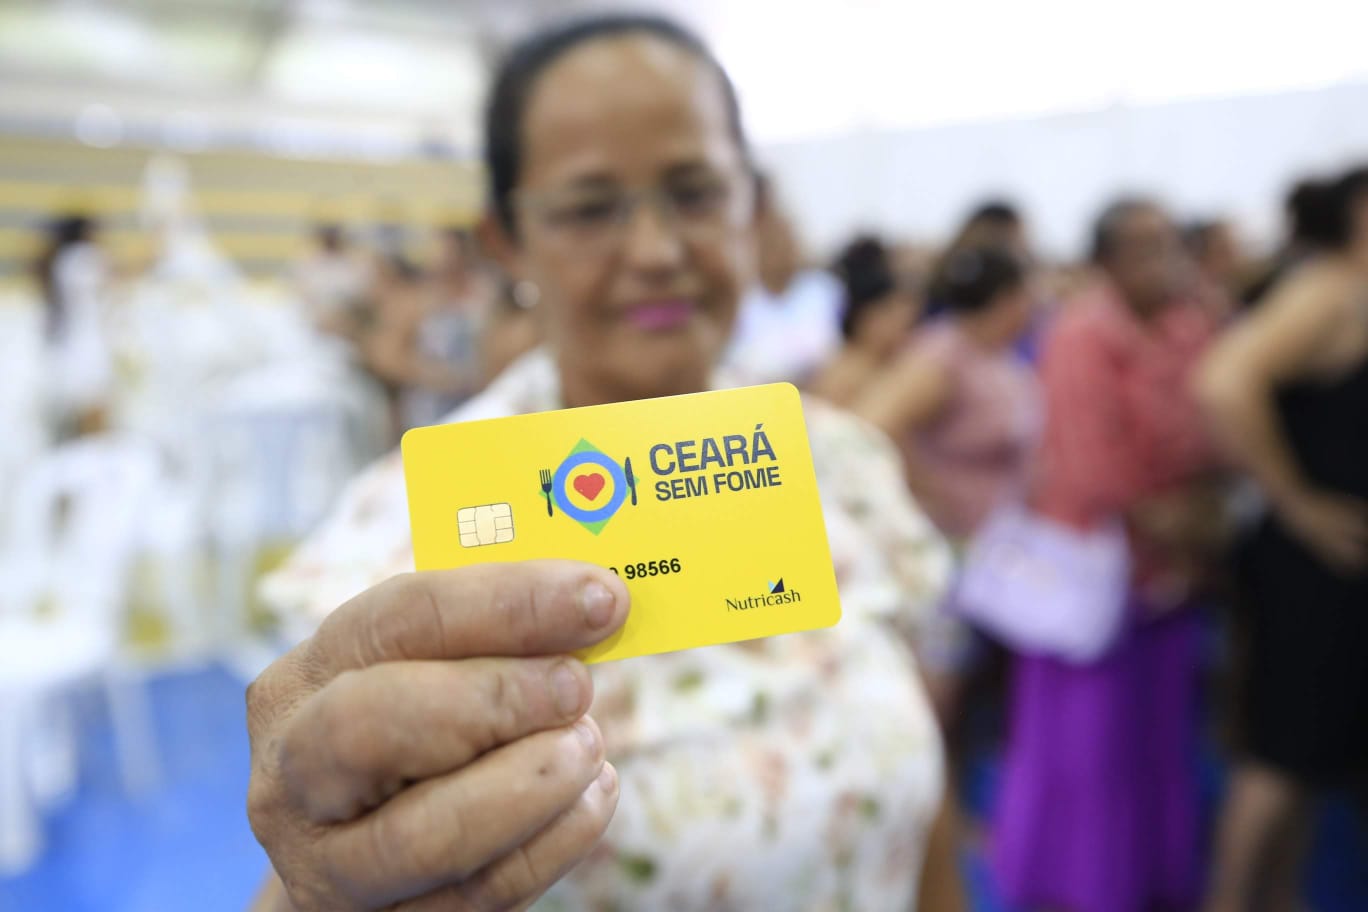 Bobs quer seis novos pontos de venda no Ceará em 2023